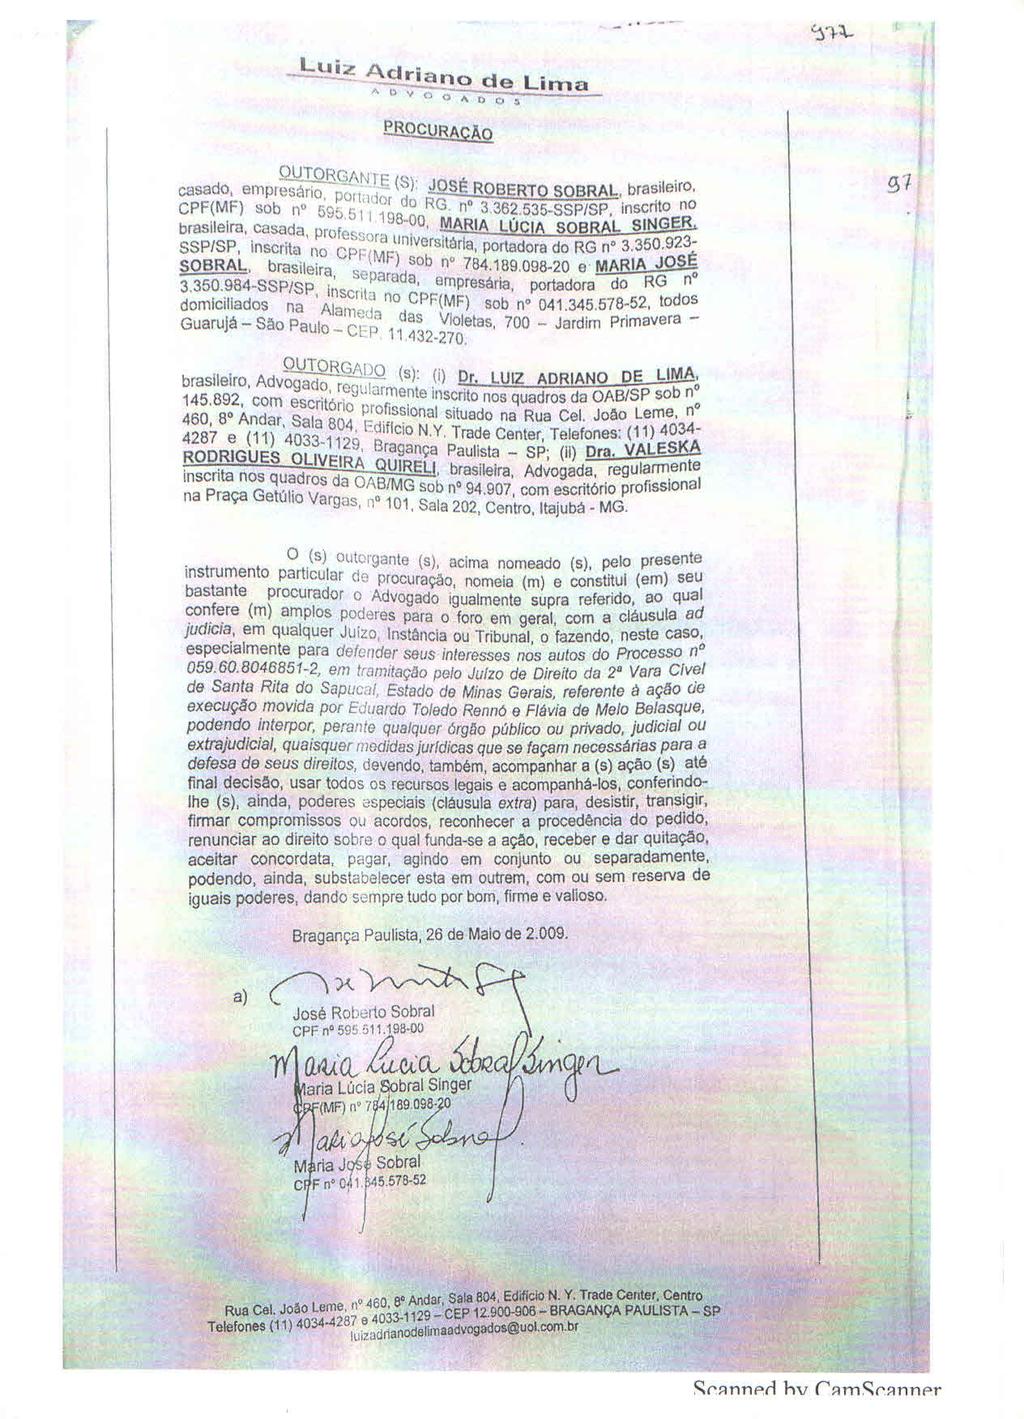 fls. 44 Este documento é cópia do original, assinado digitalmente por ANTONIO PORTUGAL RENNO NETO e Tribunal de Justica do Estado de Sao Paulo, protocolado em 26/06/2017 às 16:55, sob o número